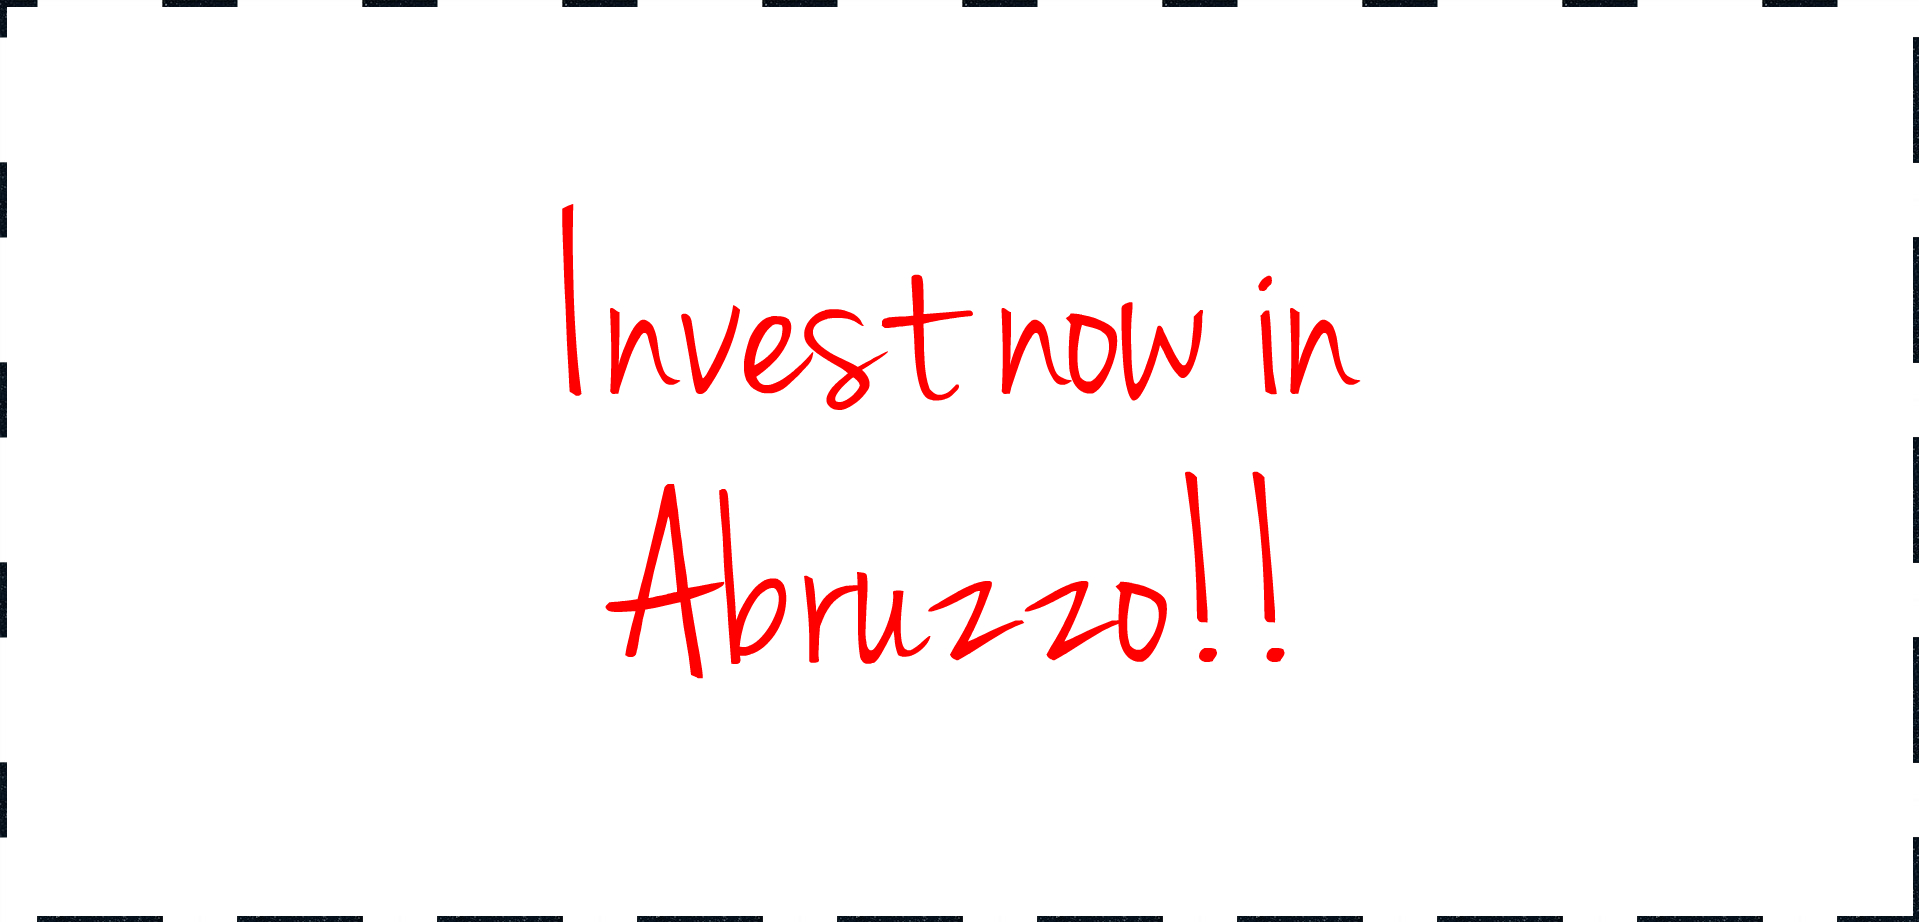 Invest now in Abruzzo.